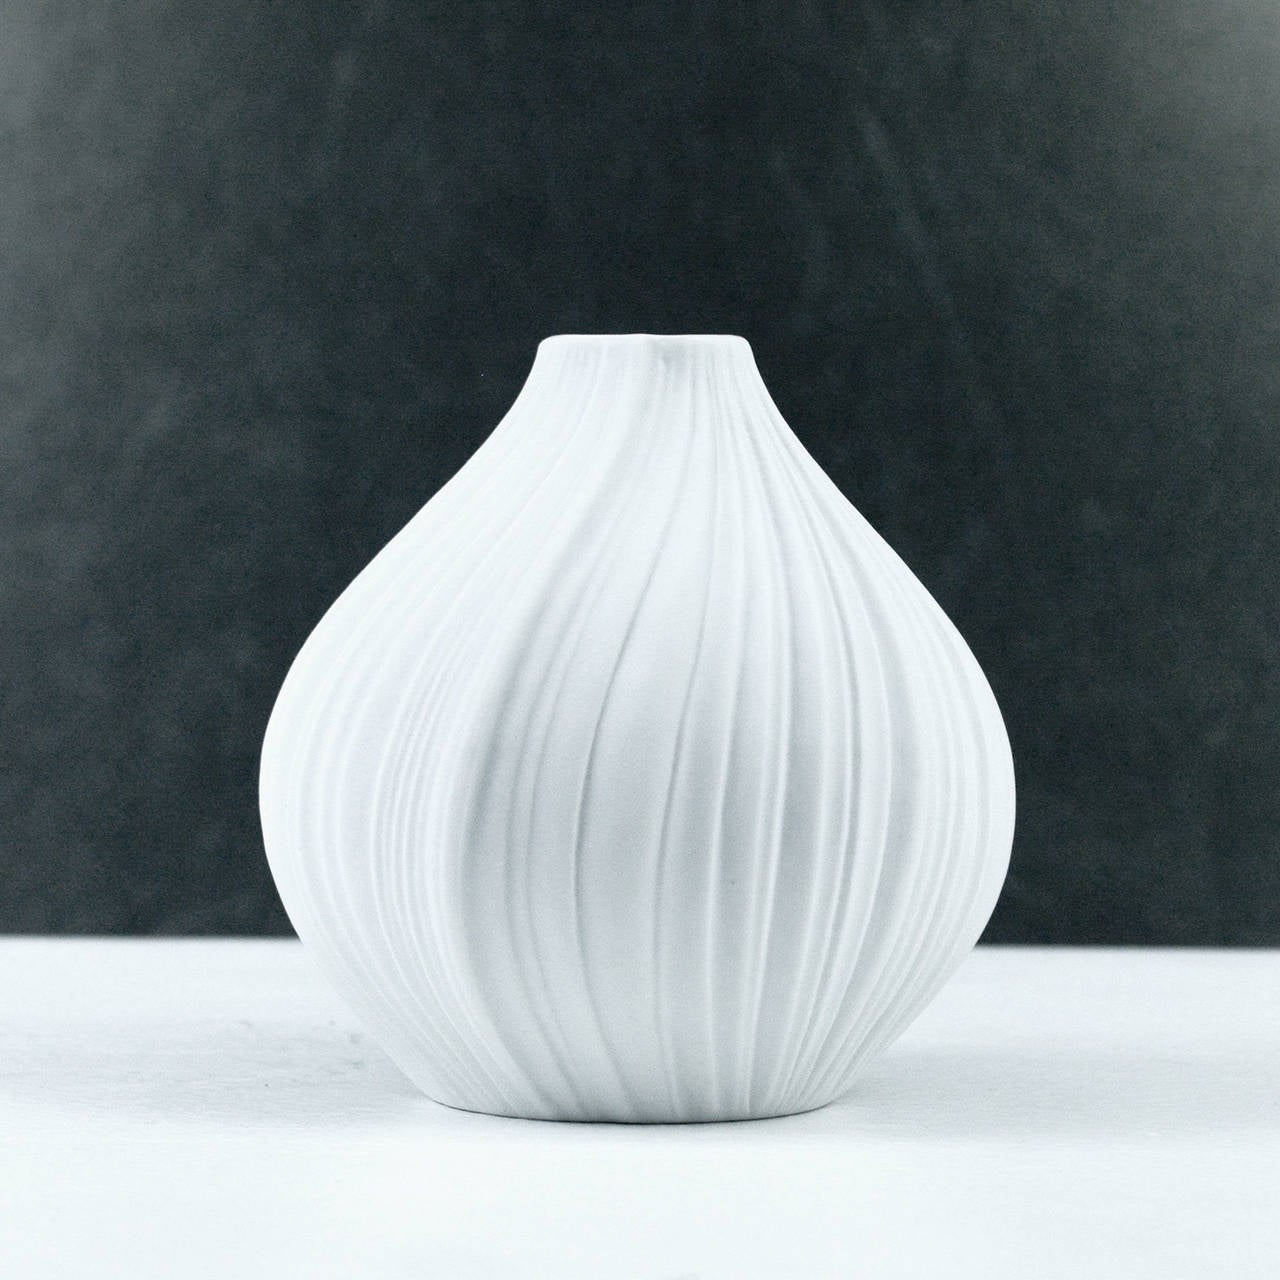 graceful German Op-Art vase by Martin Freyer for Rosenthal Studio Line in unglazed bisque porcelain